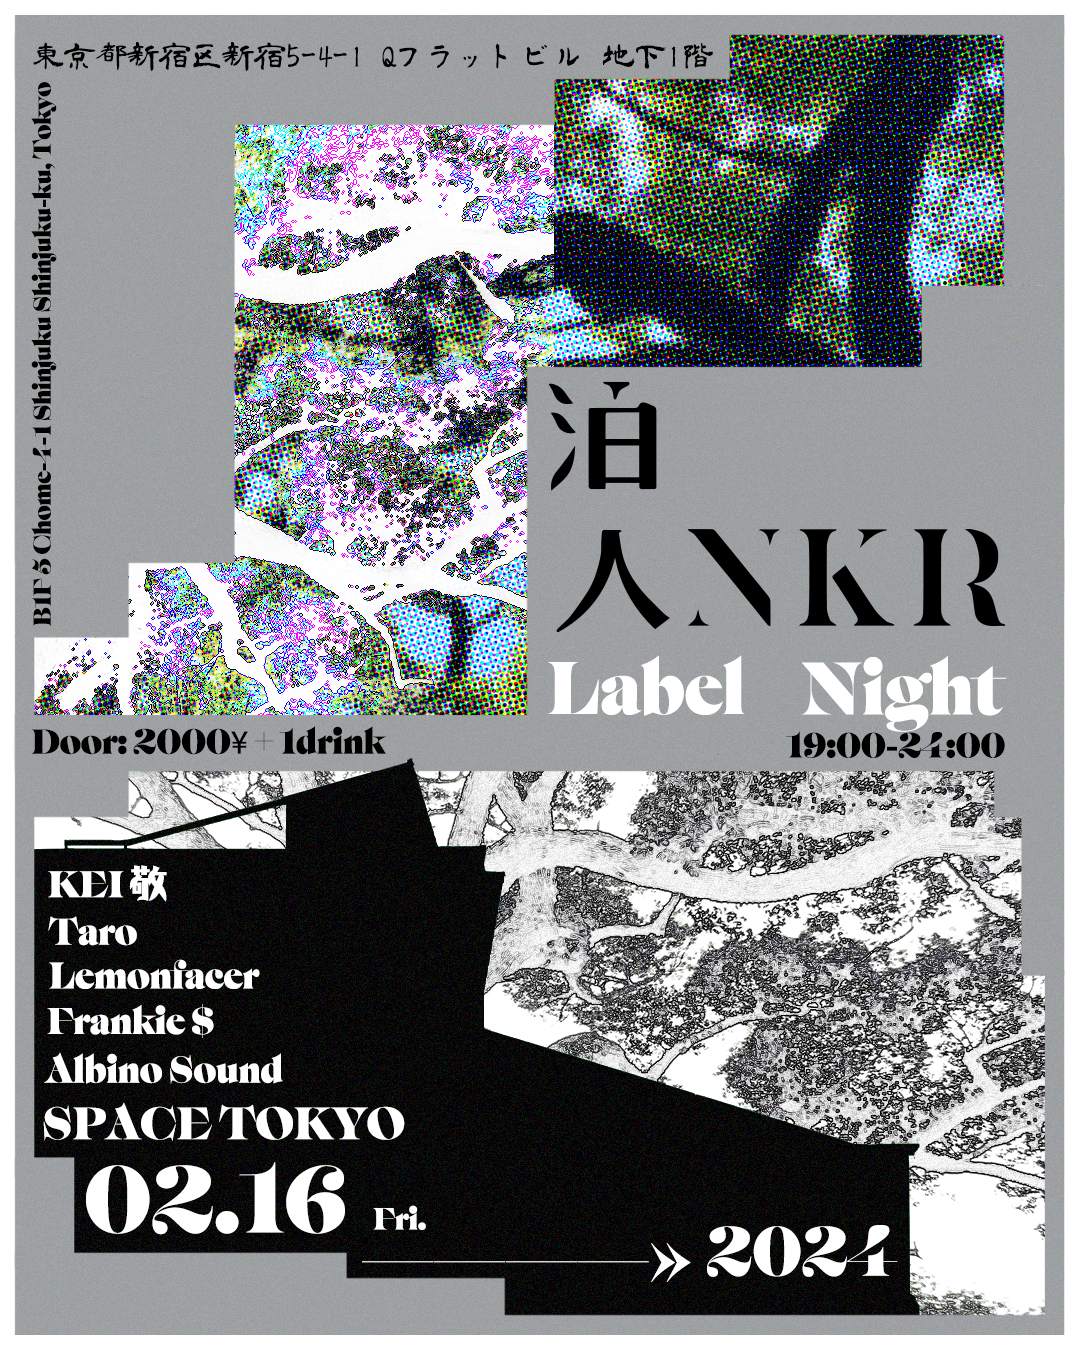 泊人ANKR Label Night - Página frontal